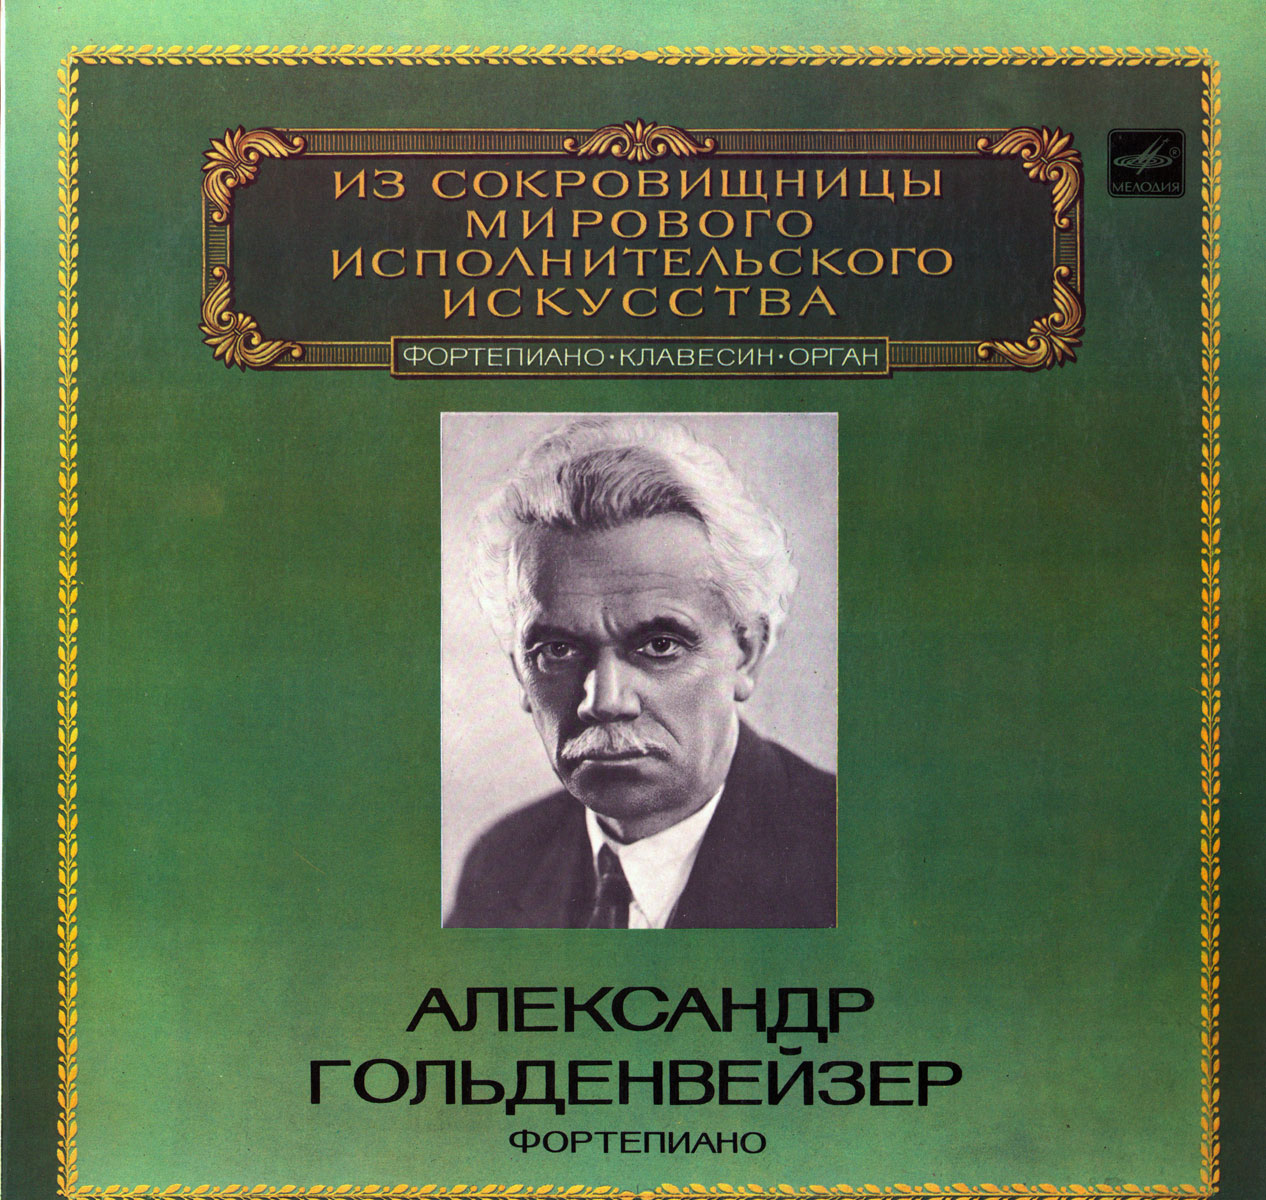 ГОЛЬДЕНВЕЙЗЕР Александр, фортепиано